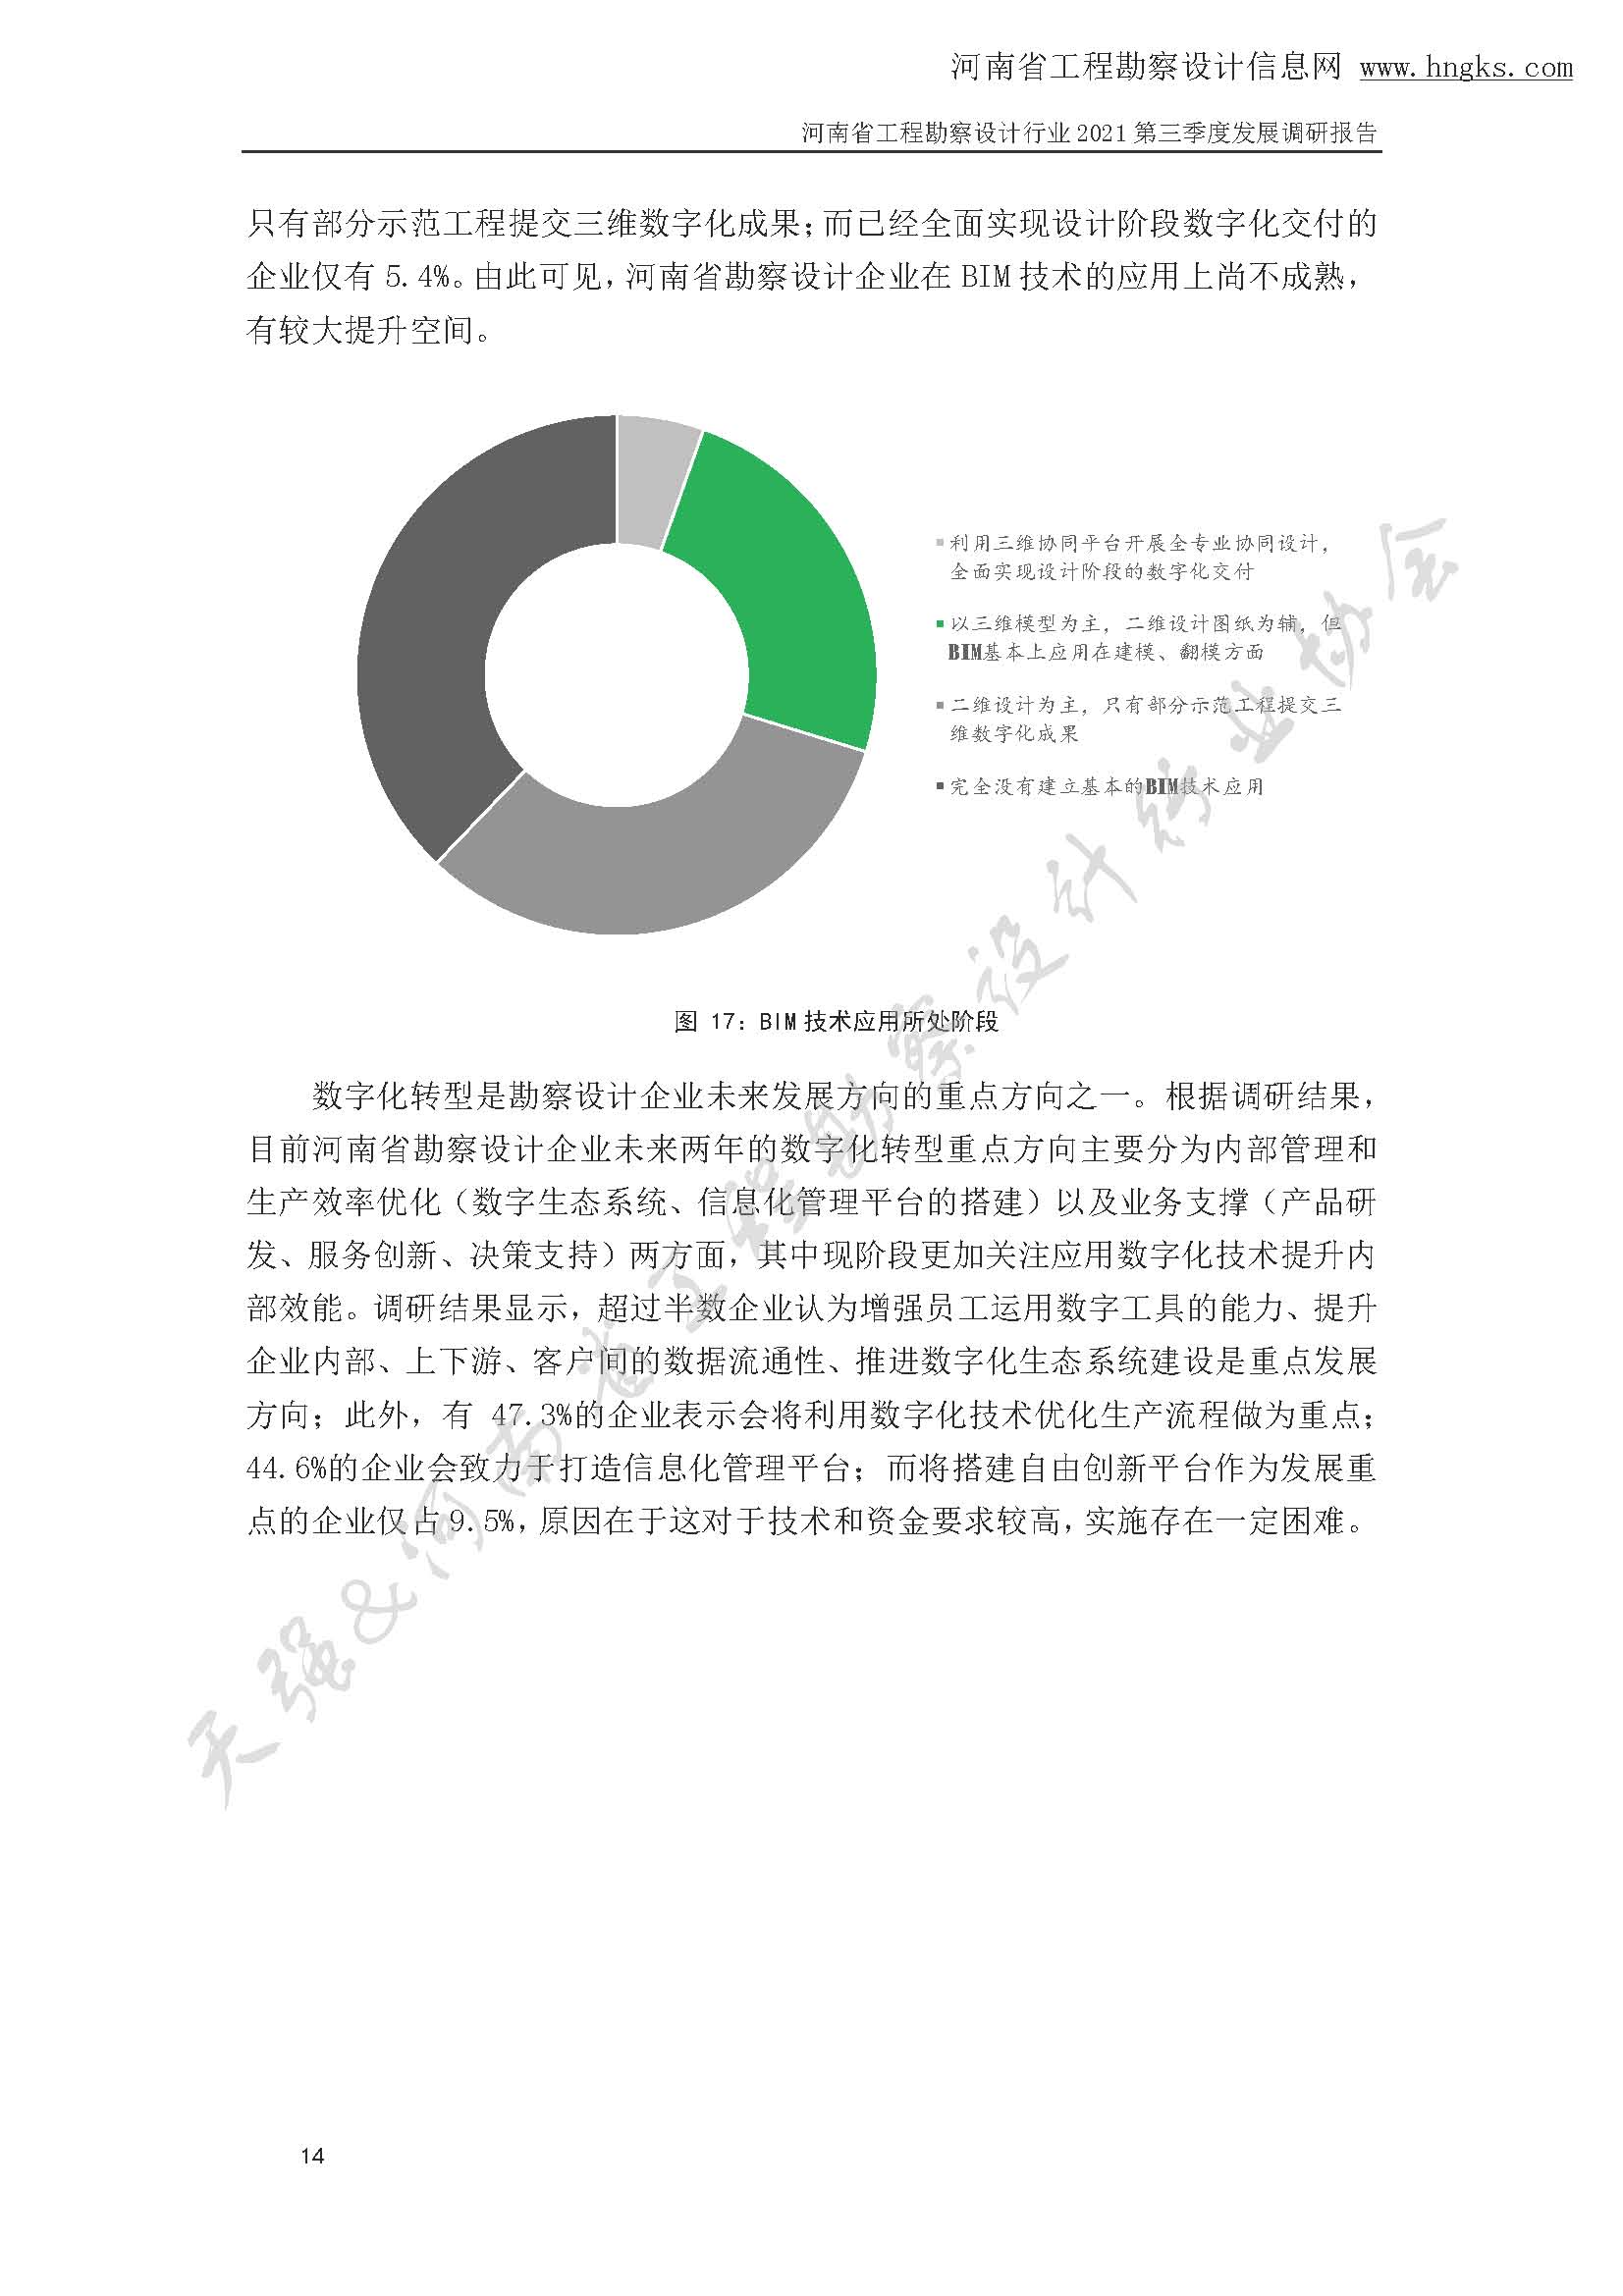 河南省工程勘察设计企业2021年第三季度发展调研报告-公开版_页面_17.jpg